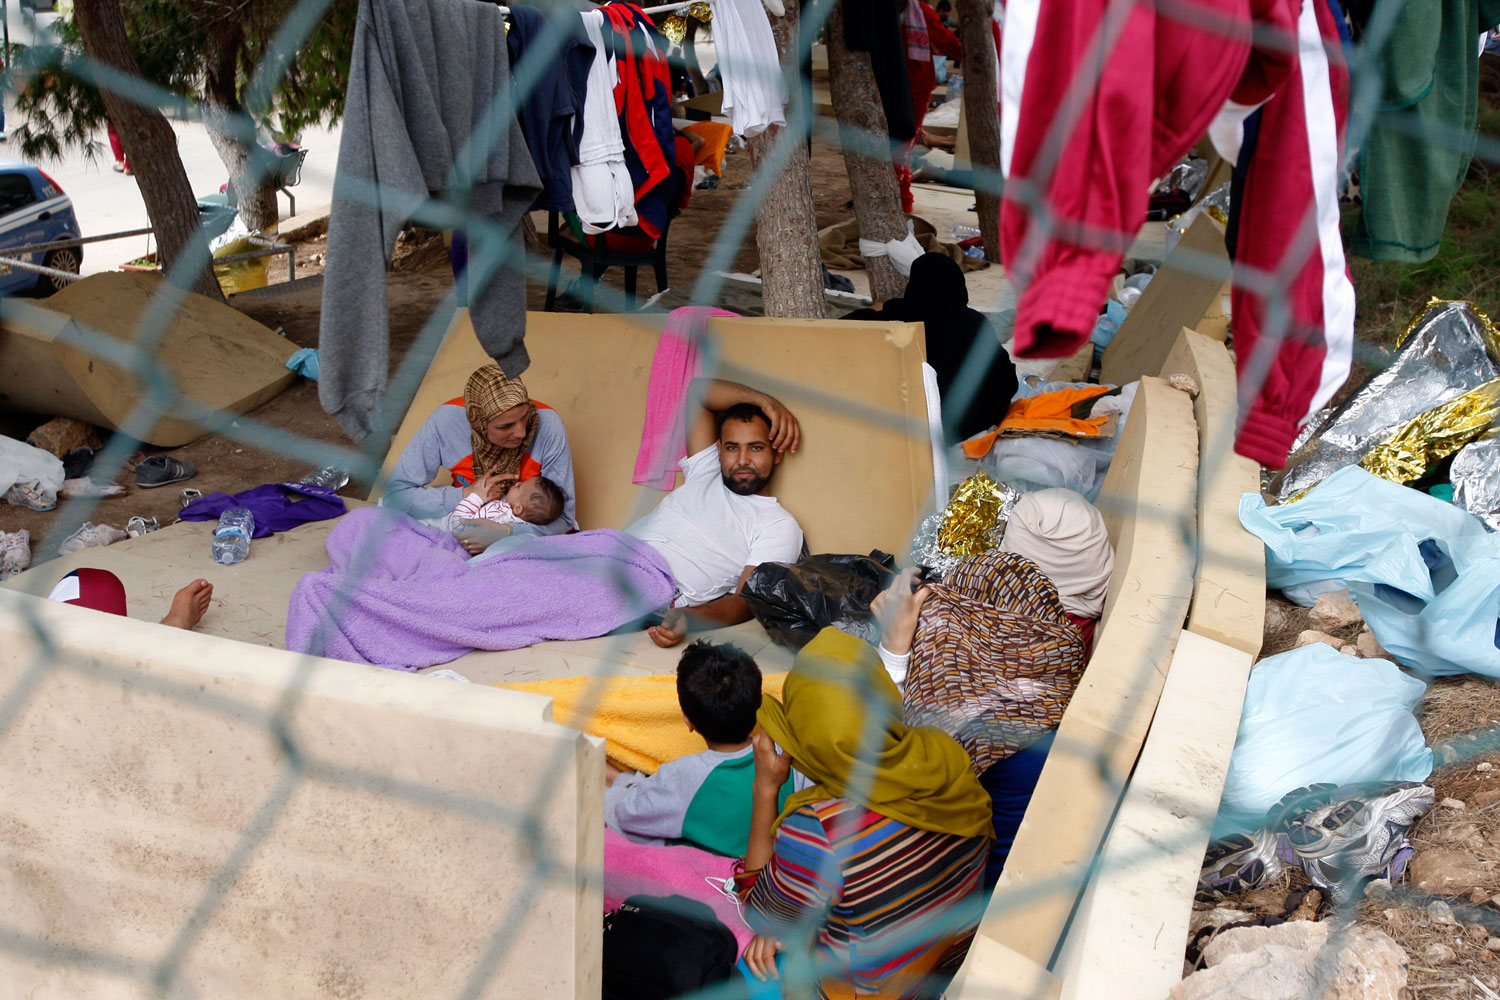 Italia desaloja el "inhumano" centro de acogida de inmigrantes de Lampedusa y abre una investigación